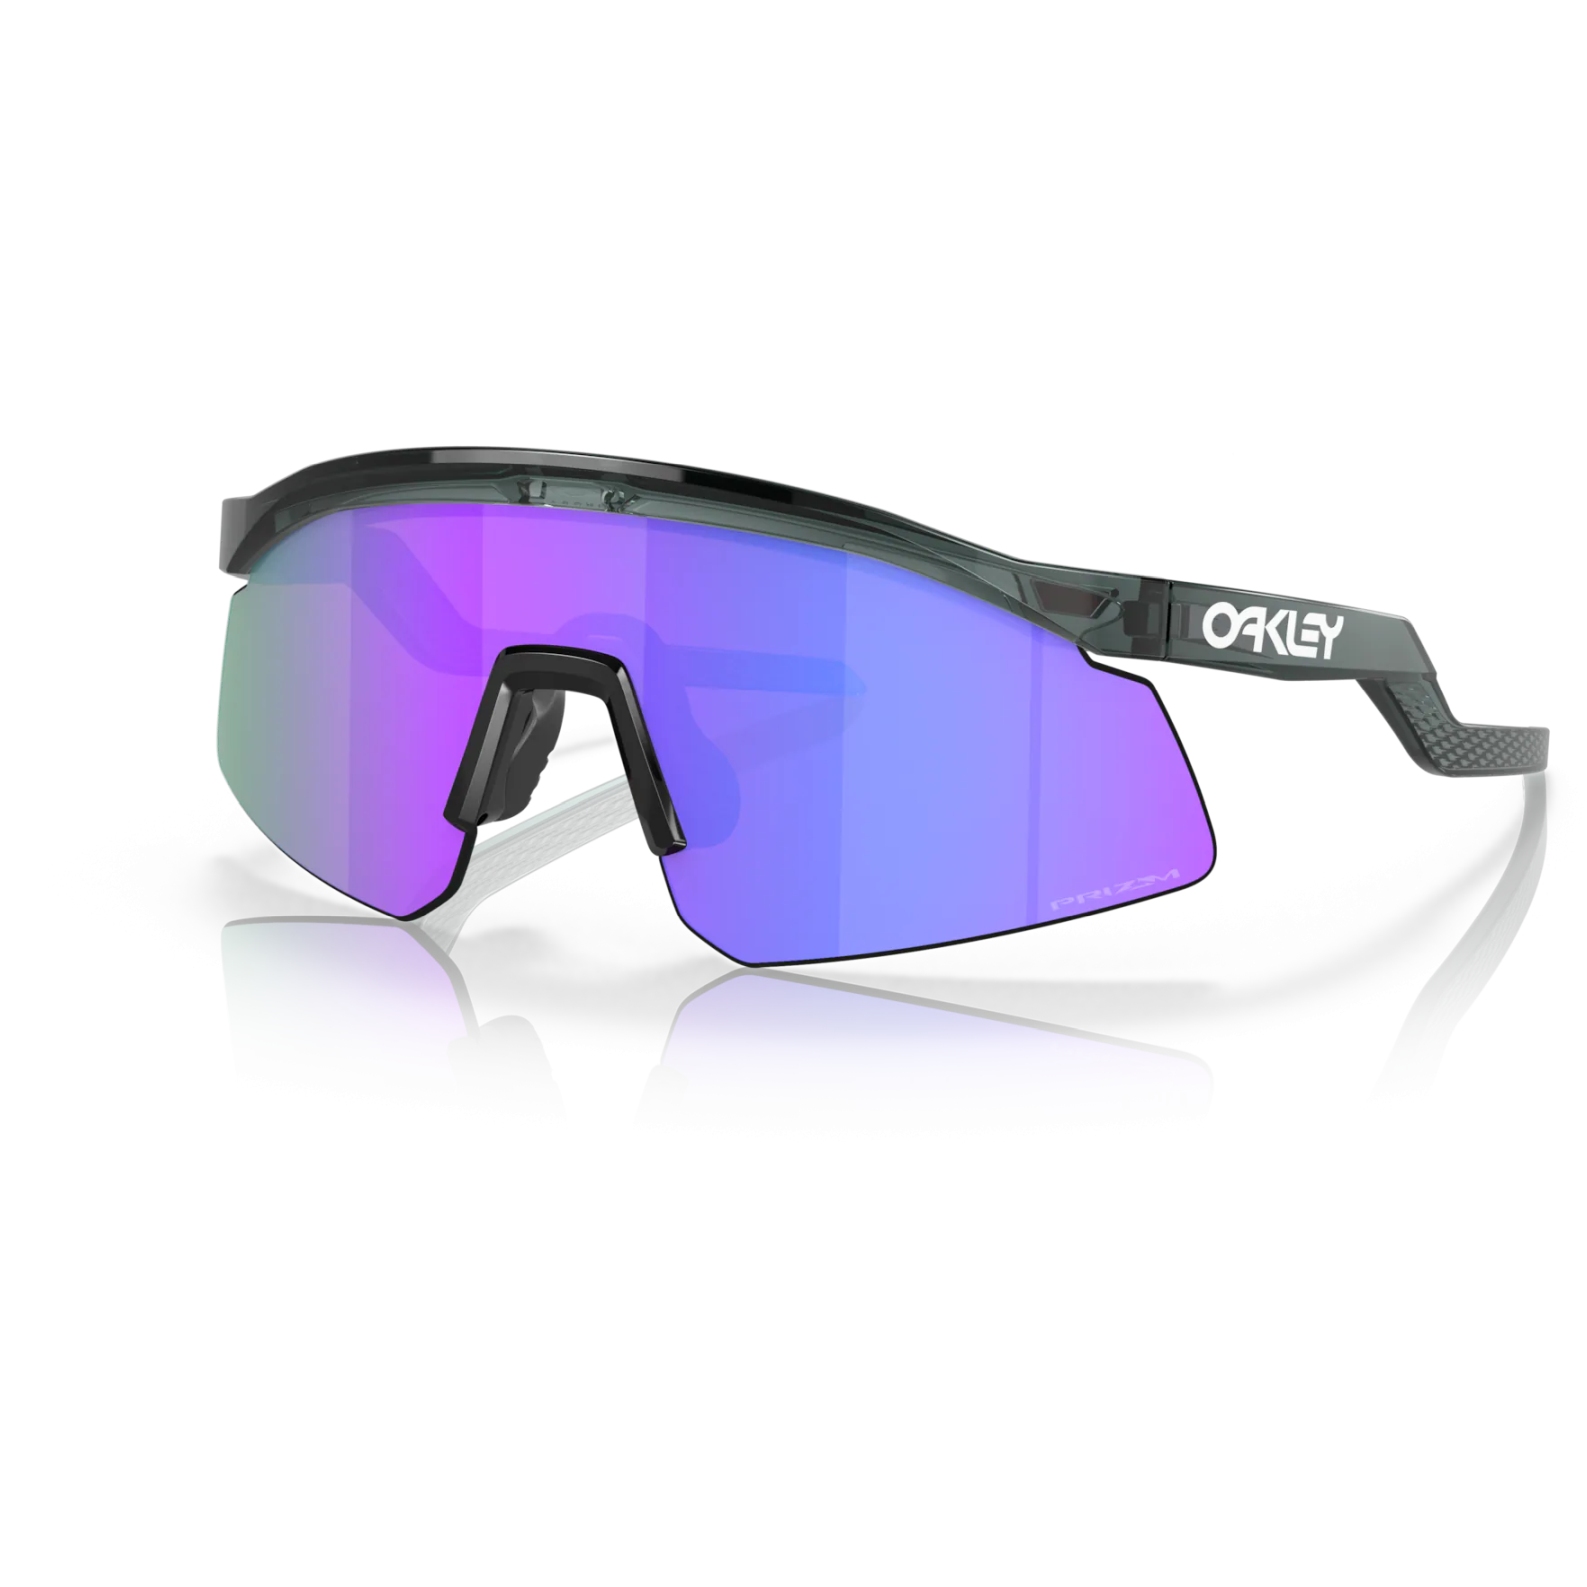 Produktbild von Oakley Hydra Brille - Crystal Black/Prizm Violet - OO9229-0437